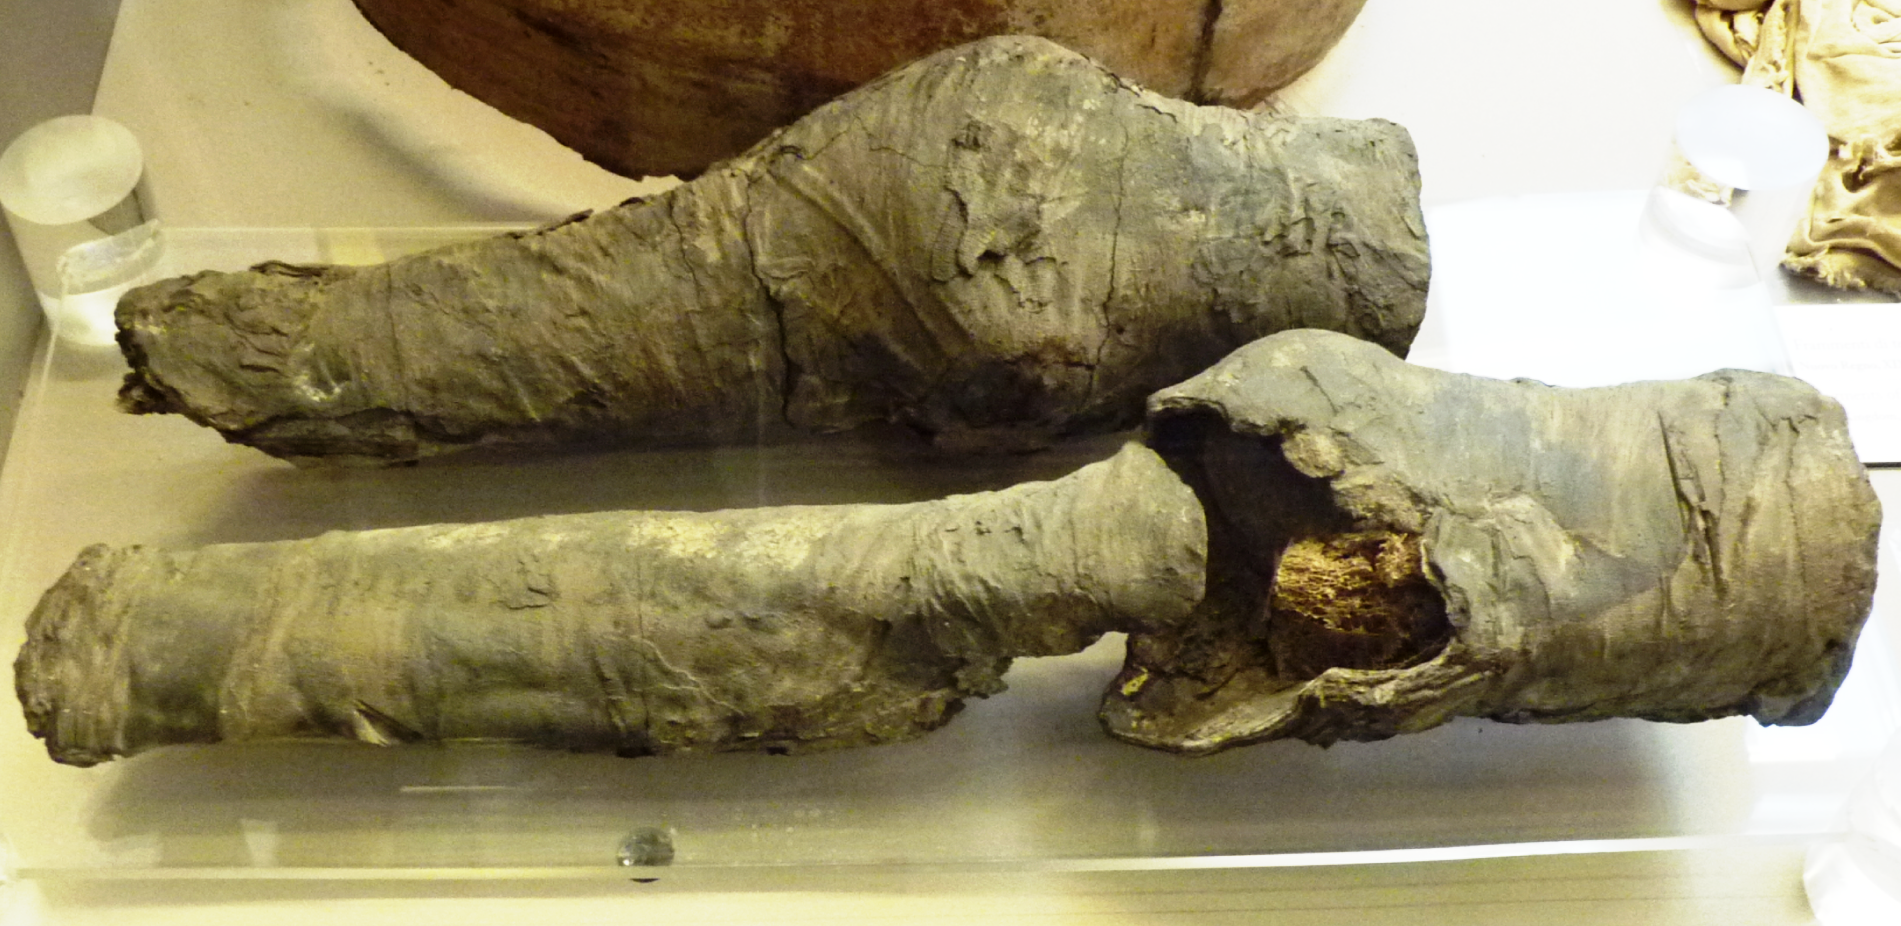 Ces fragments d'une paire de jambes momifiées sont exposés au musée des antiquités égyptiennes de Turin. On pense maintenant qu'il s'agit bien de reste&nbsp;de la momie de la favorite de Ramsès. © Joann Fletcher